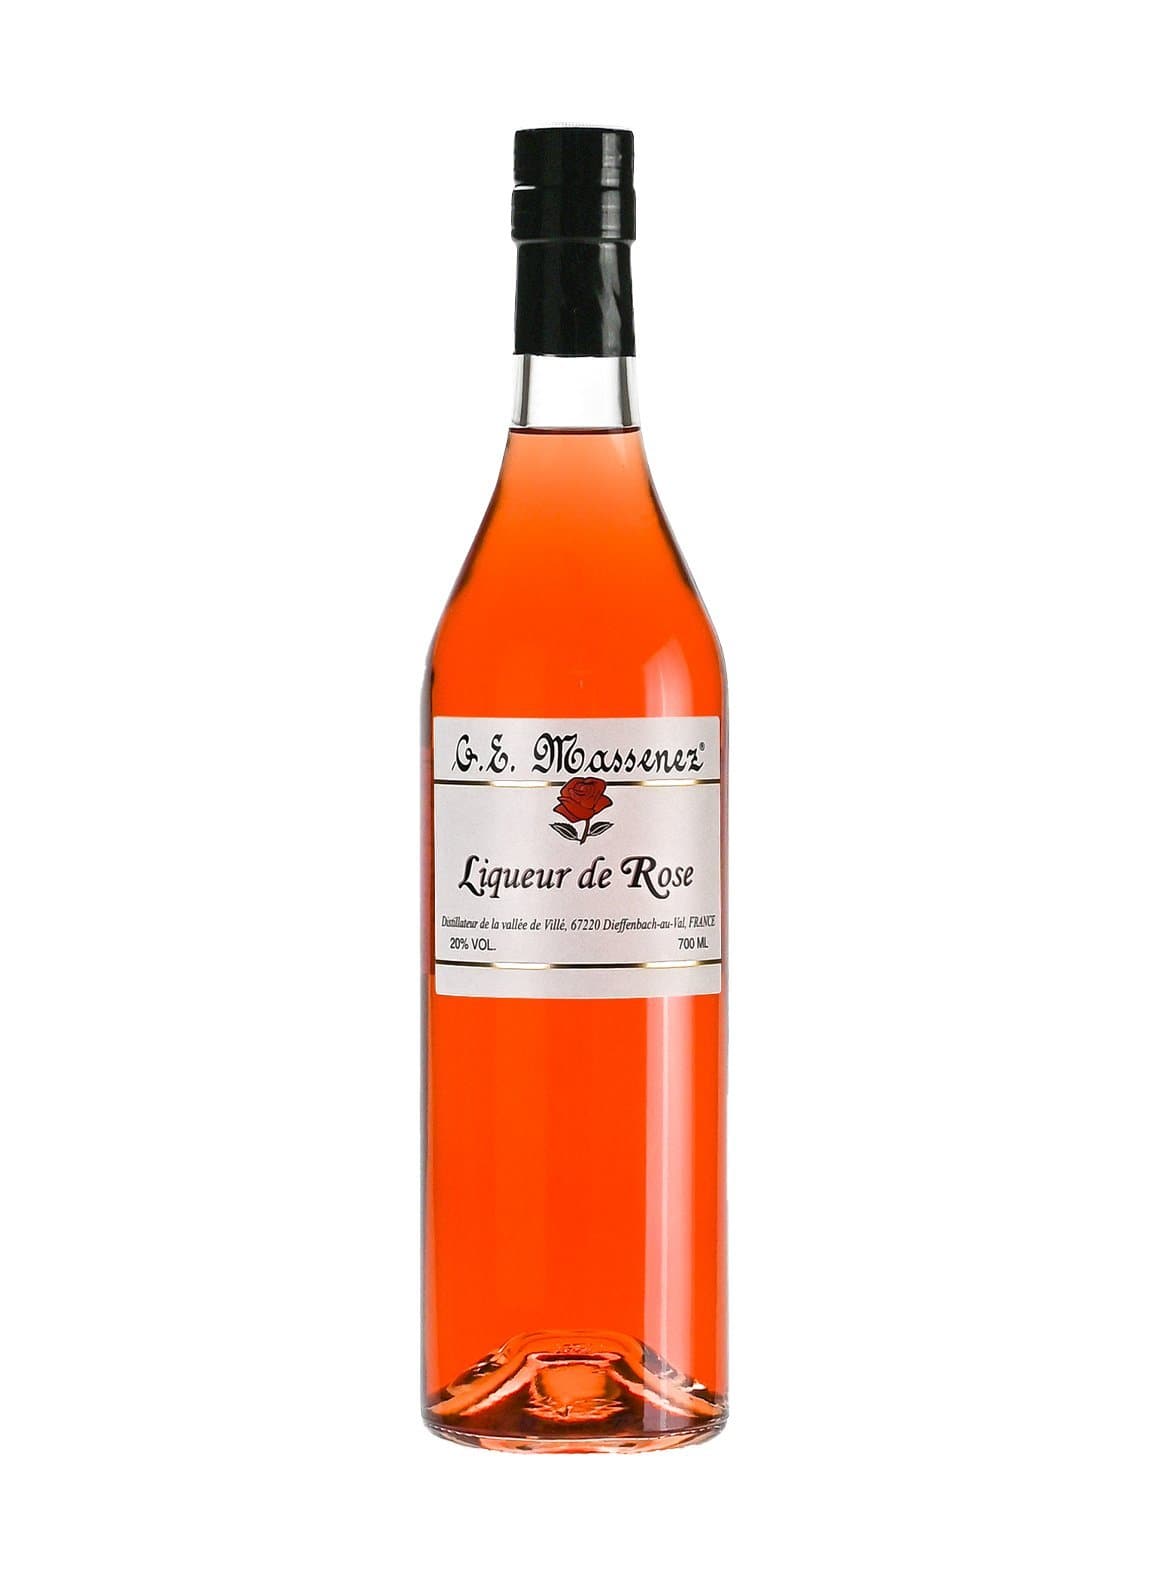 Massenez Liqueur de Rose (Rose) 20% 700ml | Liqueurs | Shop online at Spirits of France